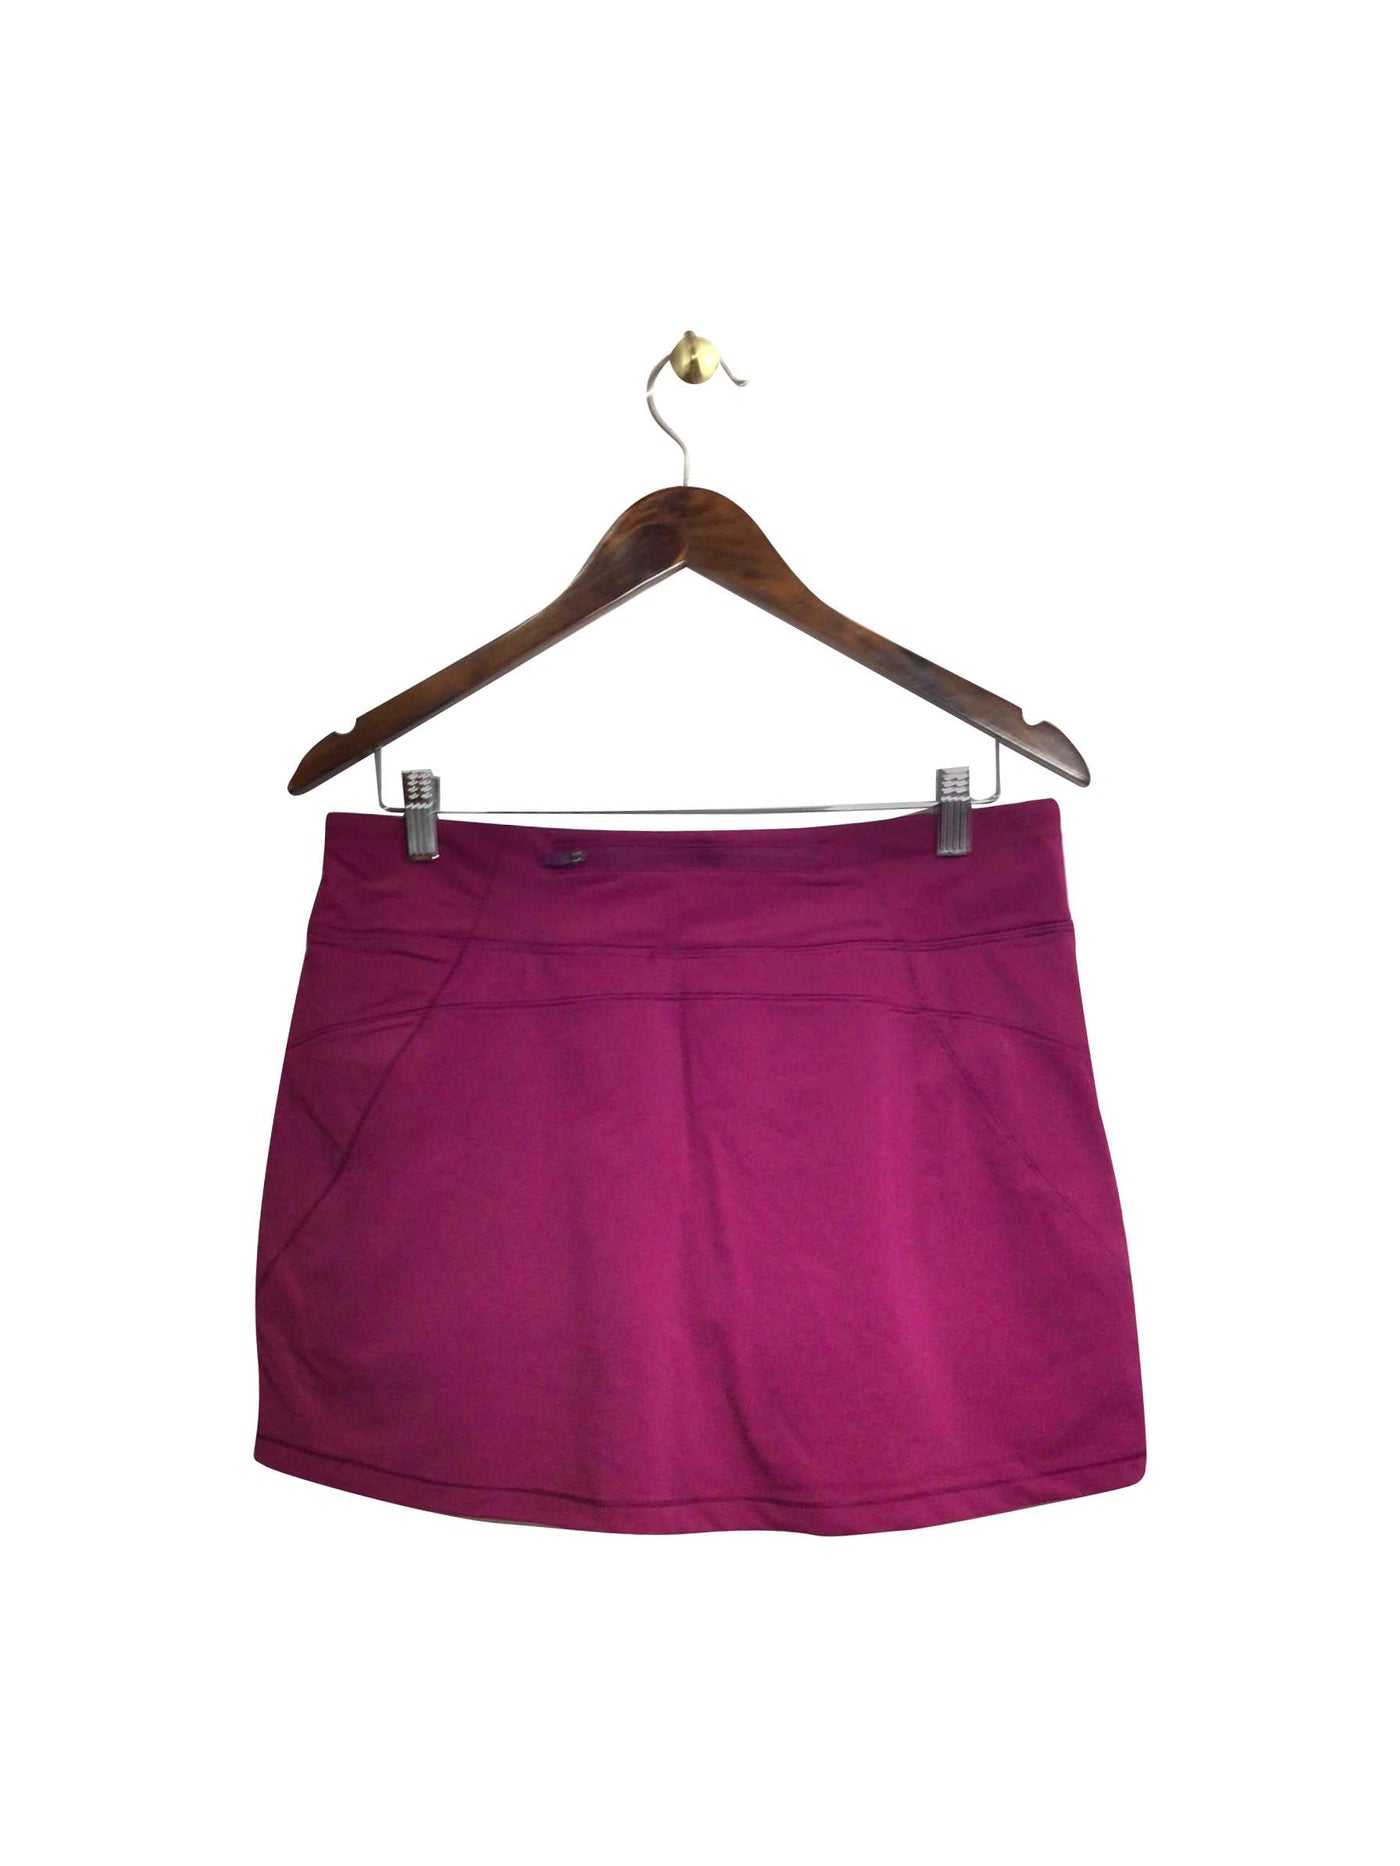 HIBA Regular fit Skirt in Purple - Size M | 15 $ KOOP